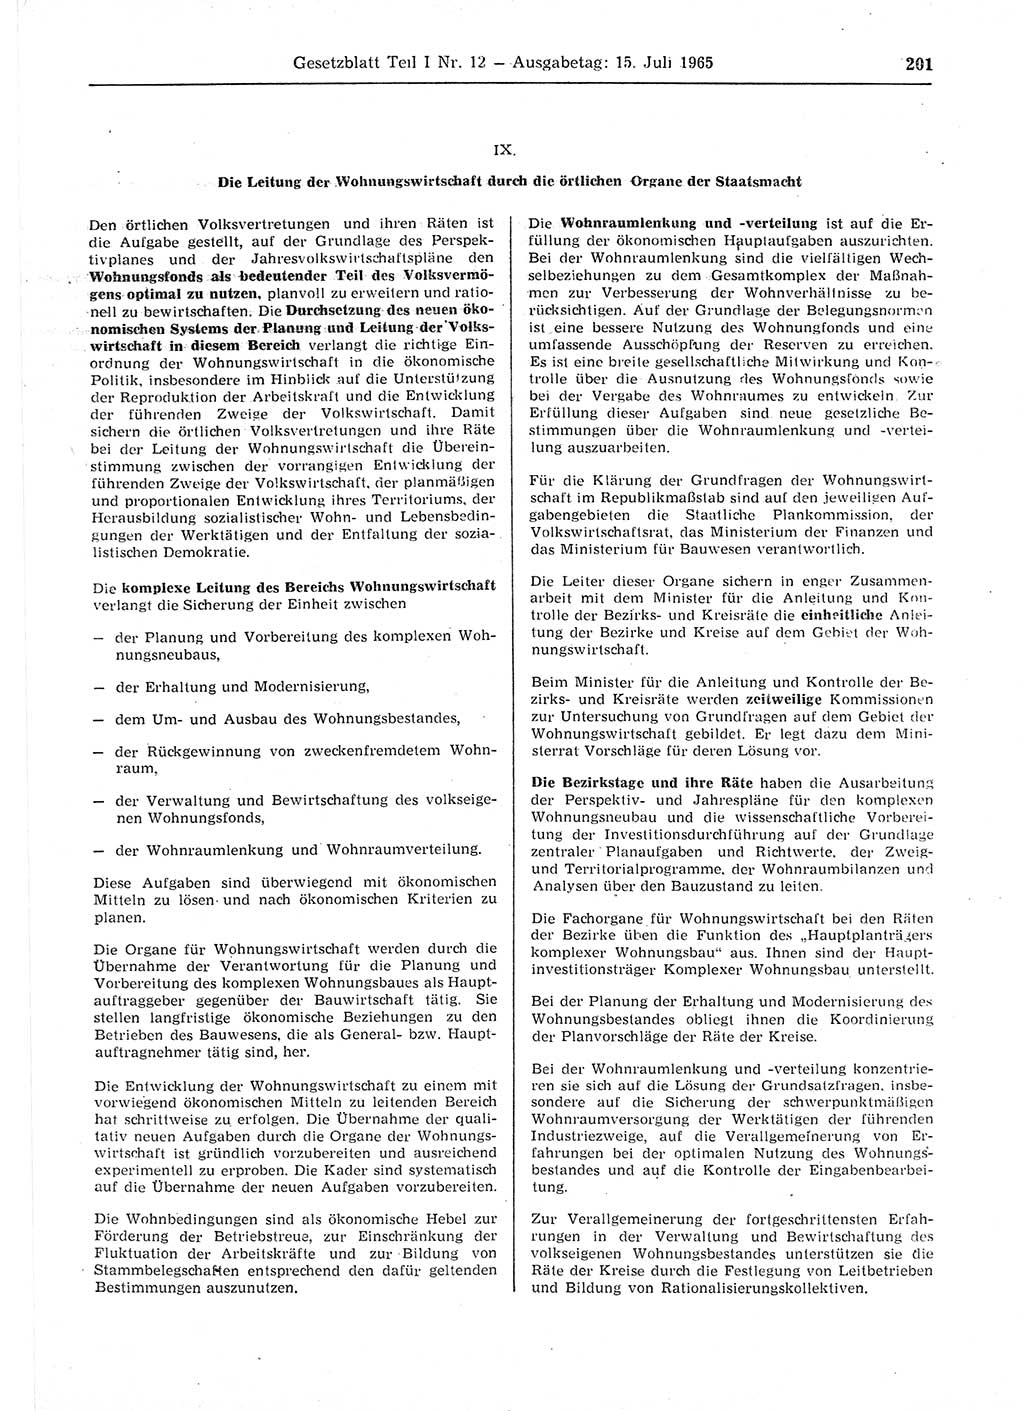 Gesetzblatt (GBl.) der Deutschen Demokratischen Republik (DDR) Teil Ⅰ 1965, Seite 201 (GBl. DDR Ⅰ 1965, S. 201)